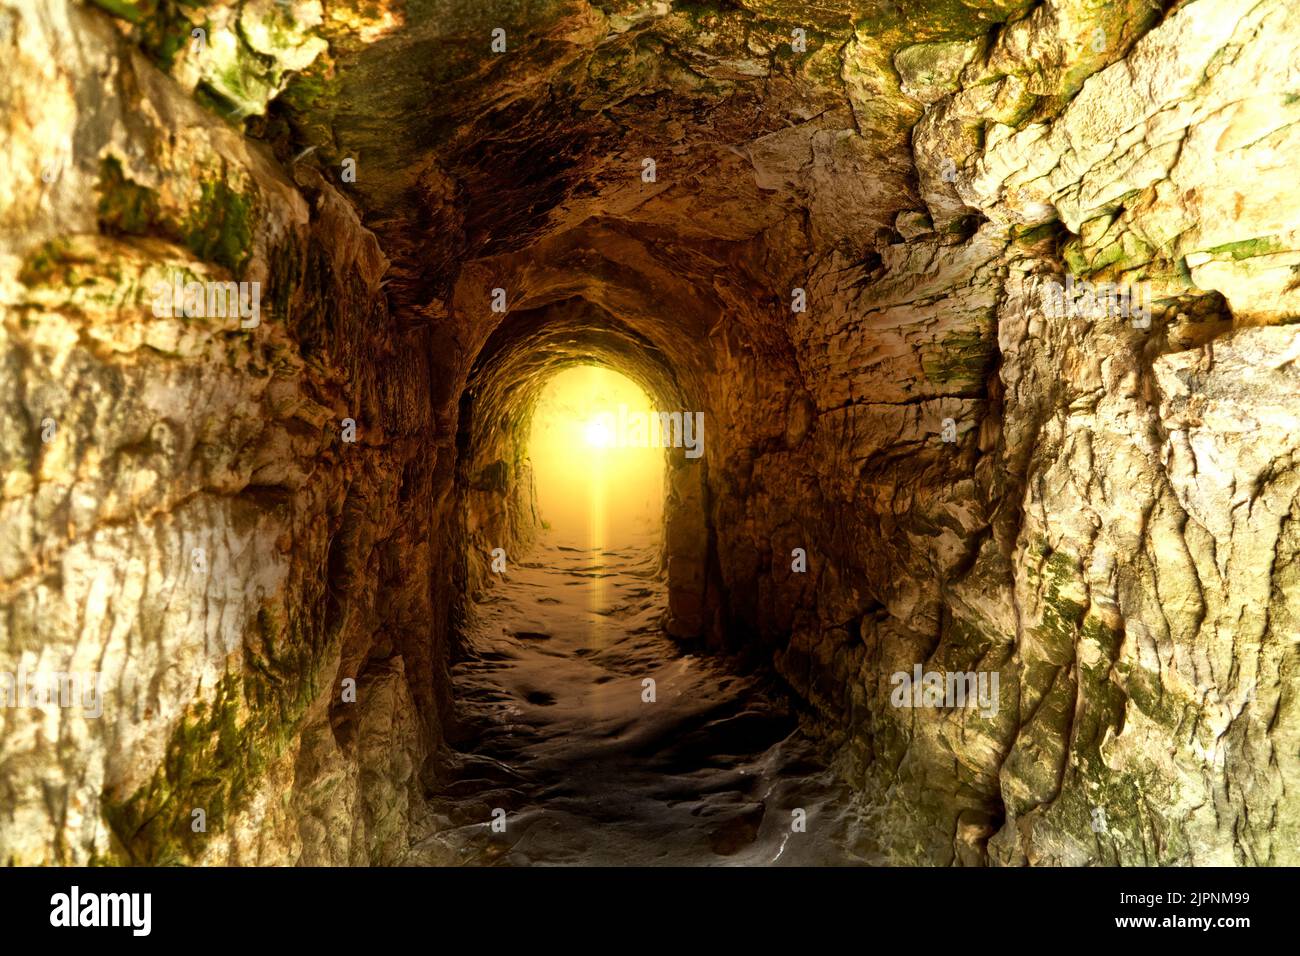 Sonnenlicht am Ende eines Tunnels aus grobem Kalkstein, monochromes Farbkonzept Stockfoto